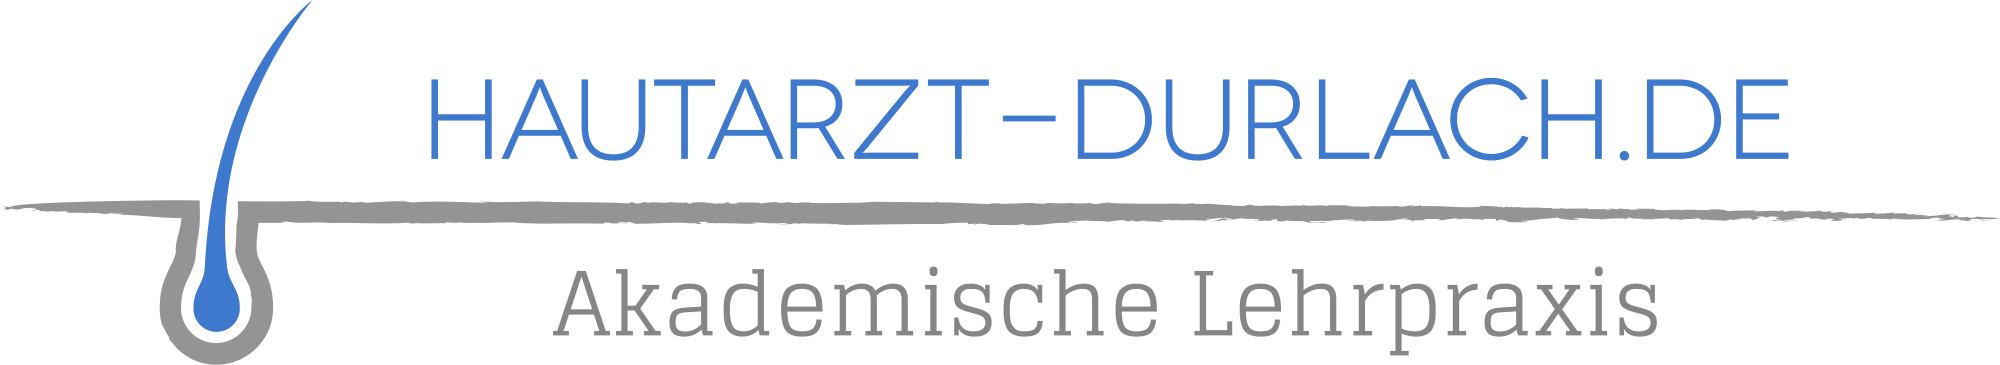 Dr. Küster – Hautarzt Karlsruhe-Durlach